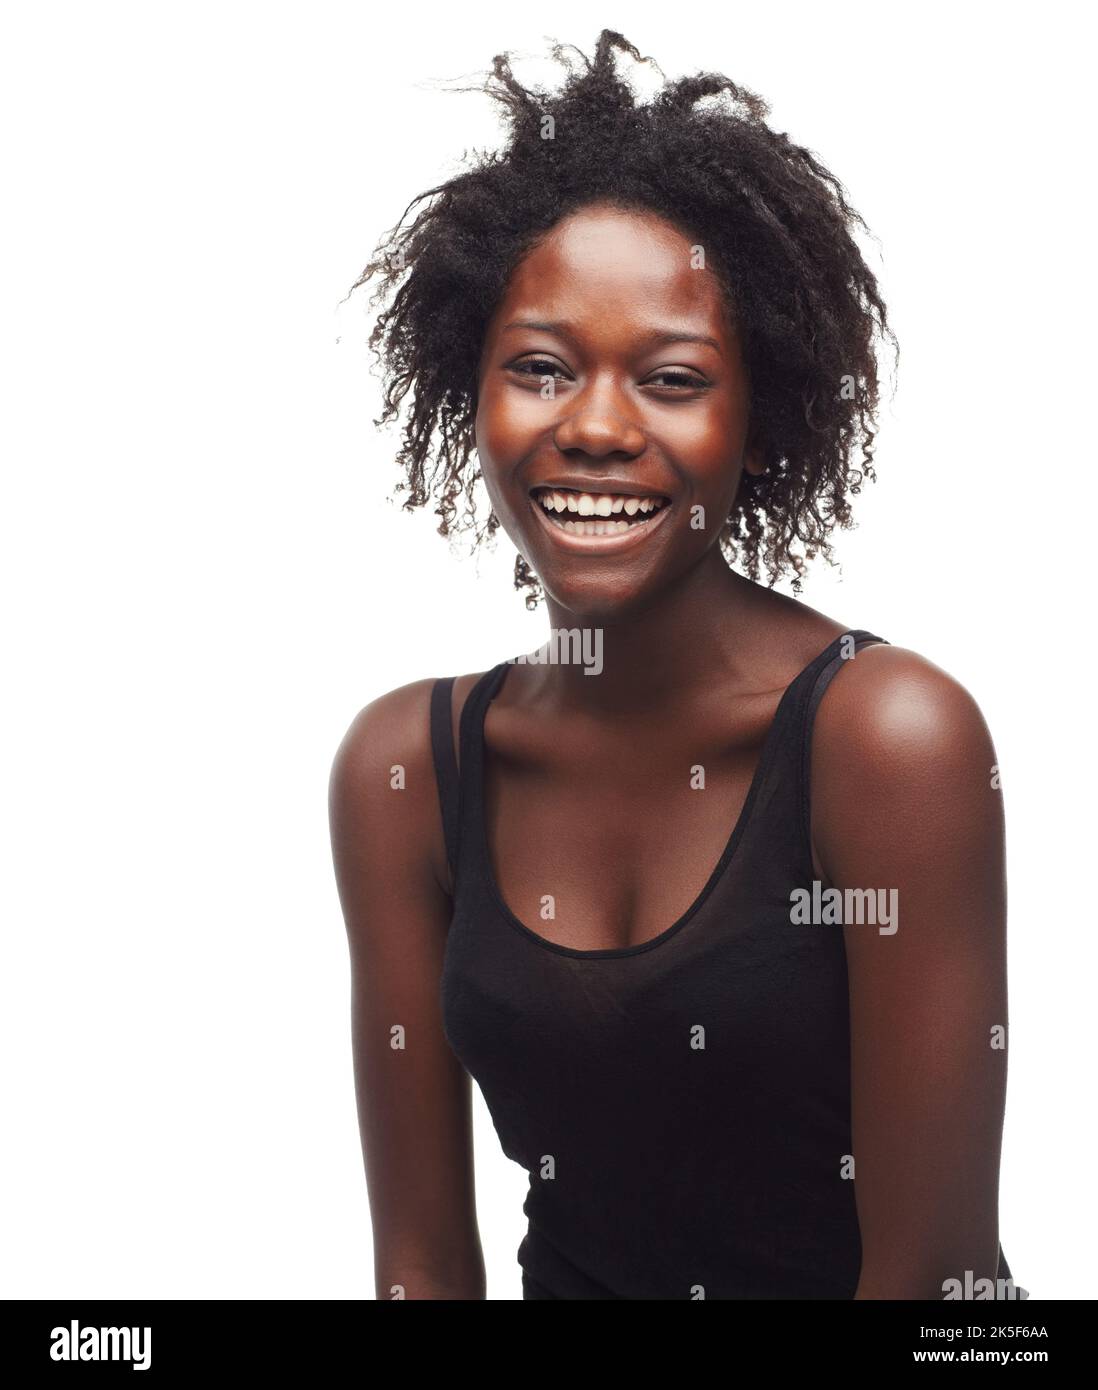 Lachen ist die beste Medizin. Porträt einer schönen jungen Frau, die Positivität auf weißem Hintergrund ausdrückt. Stockfoto